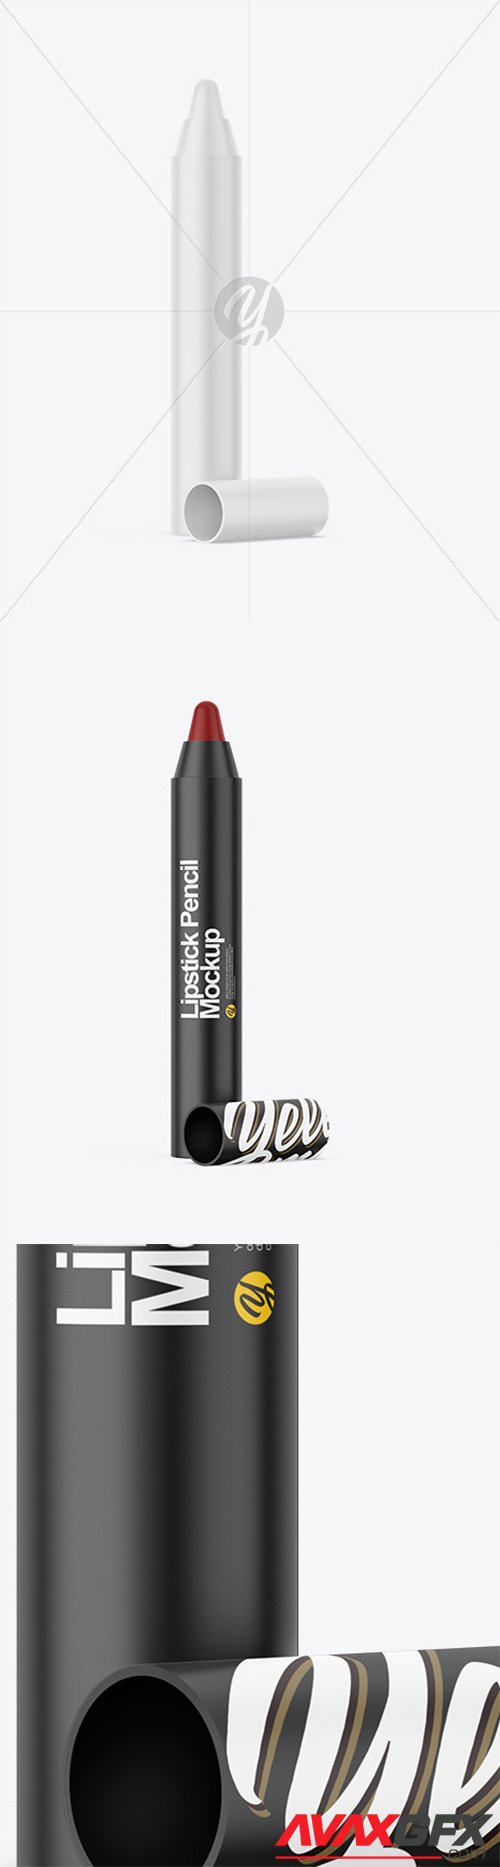 Matte Lipstick Pencil Mockup 82138